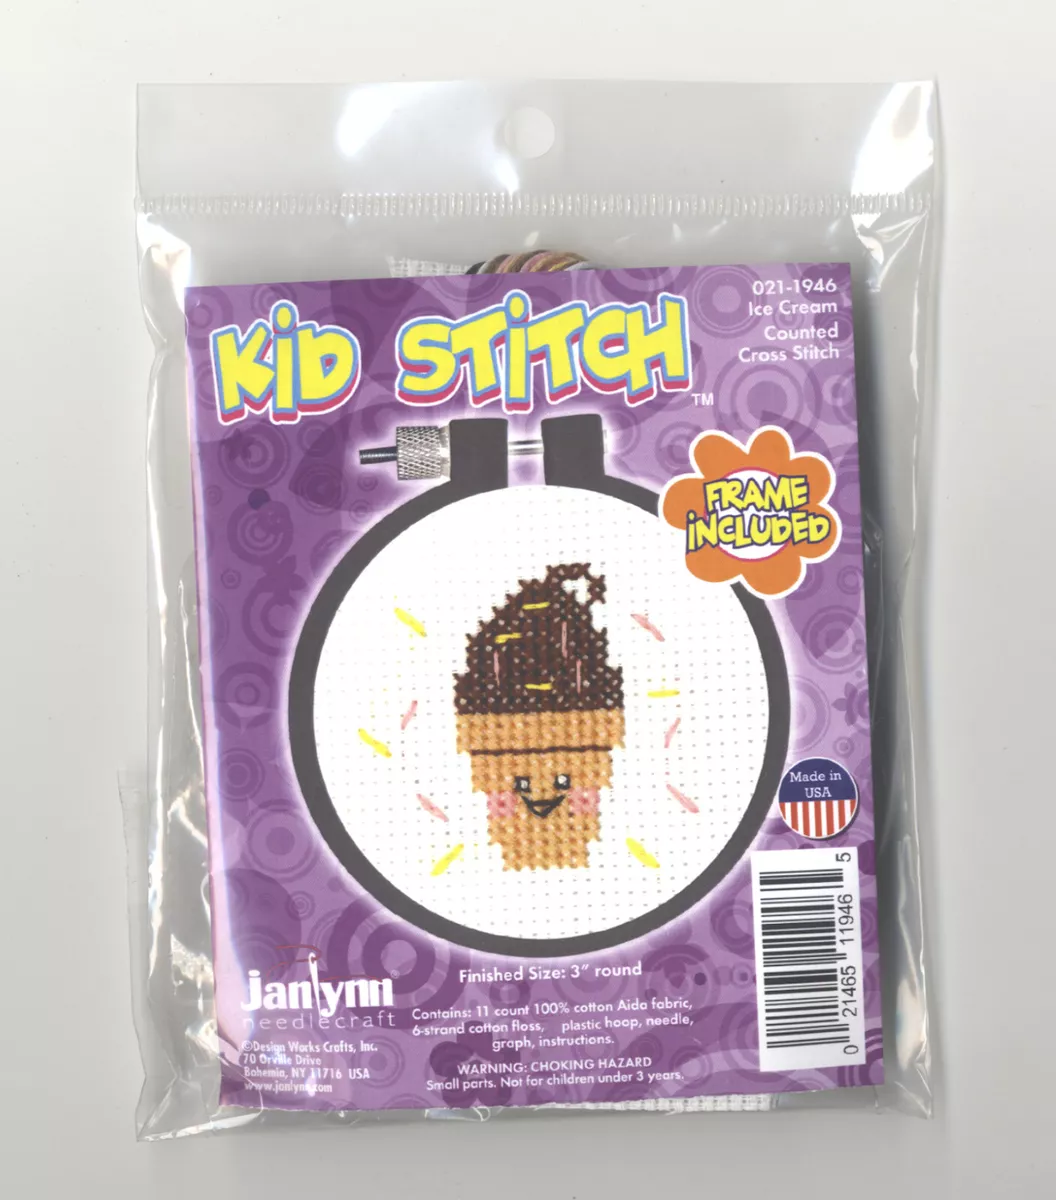 Kidstitch With pizzazz! Cross-stitch Kit For Kids